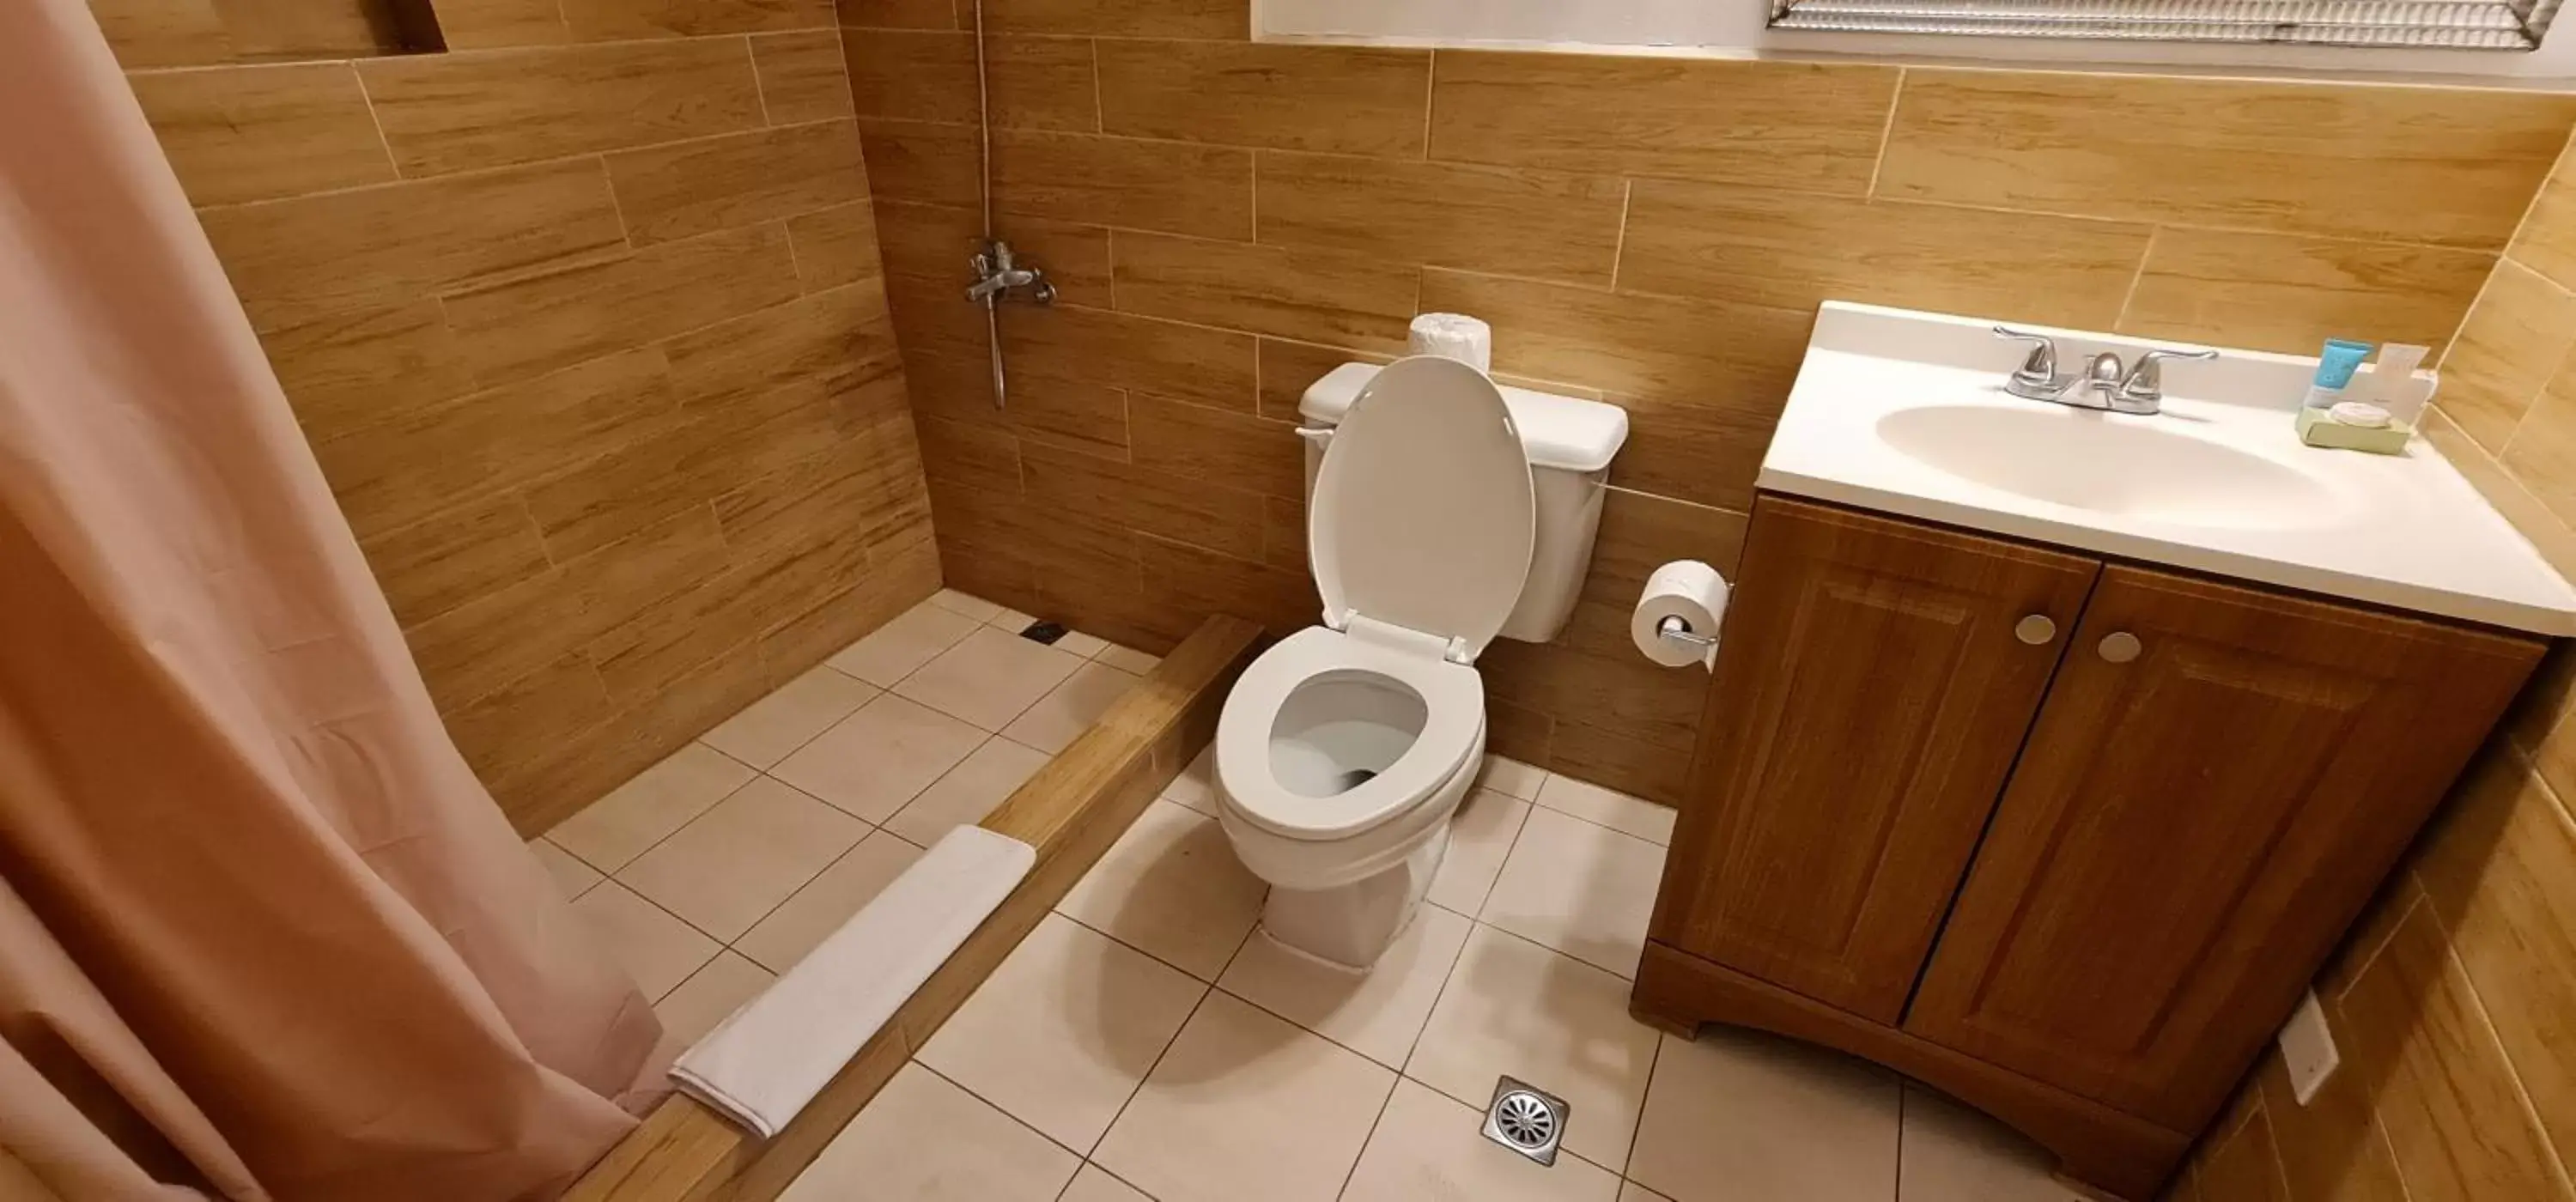 Bathroom in SureStay Hotel by Best Western Guam Palmridge